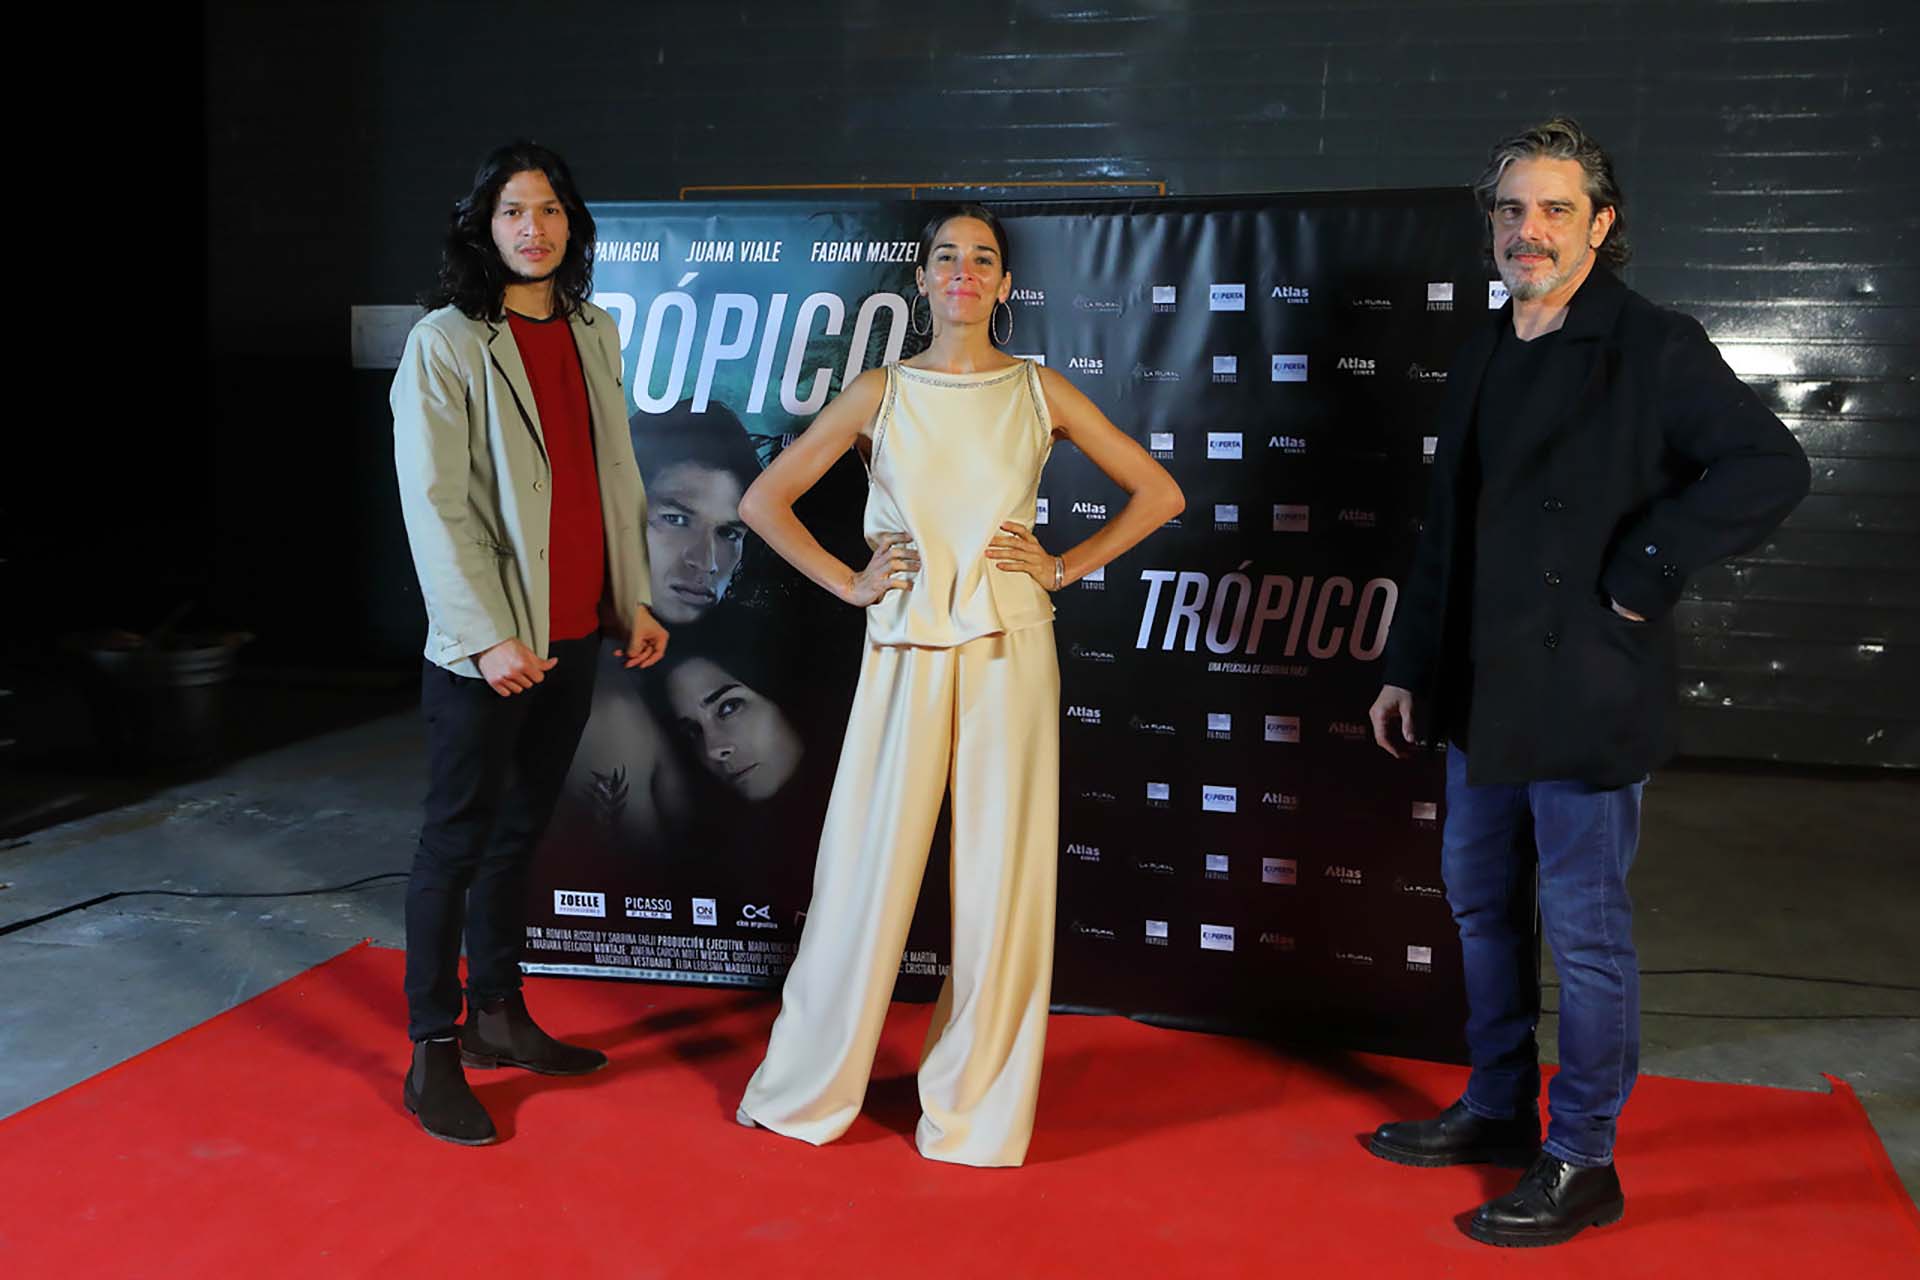 Juana Viale en la presentación de la película "Trópico" la semana pasada (Foto: Fabián Malavolta)